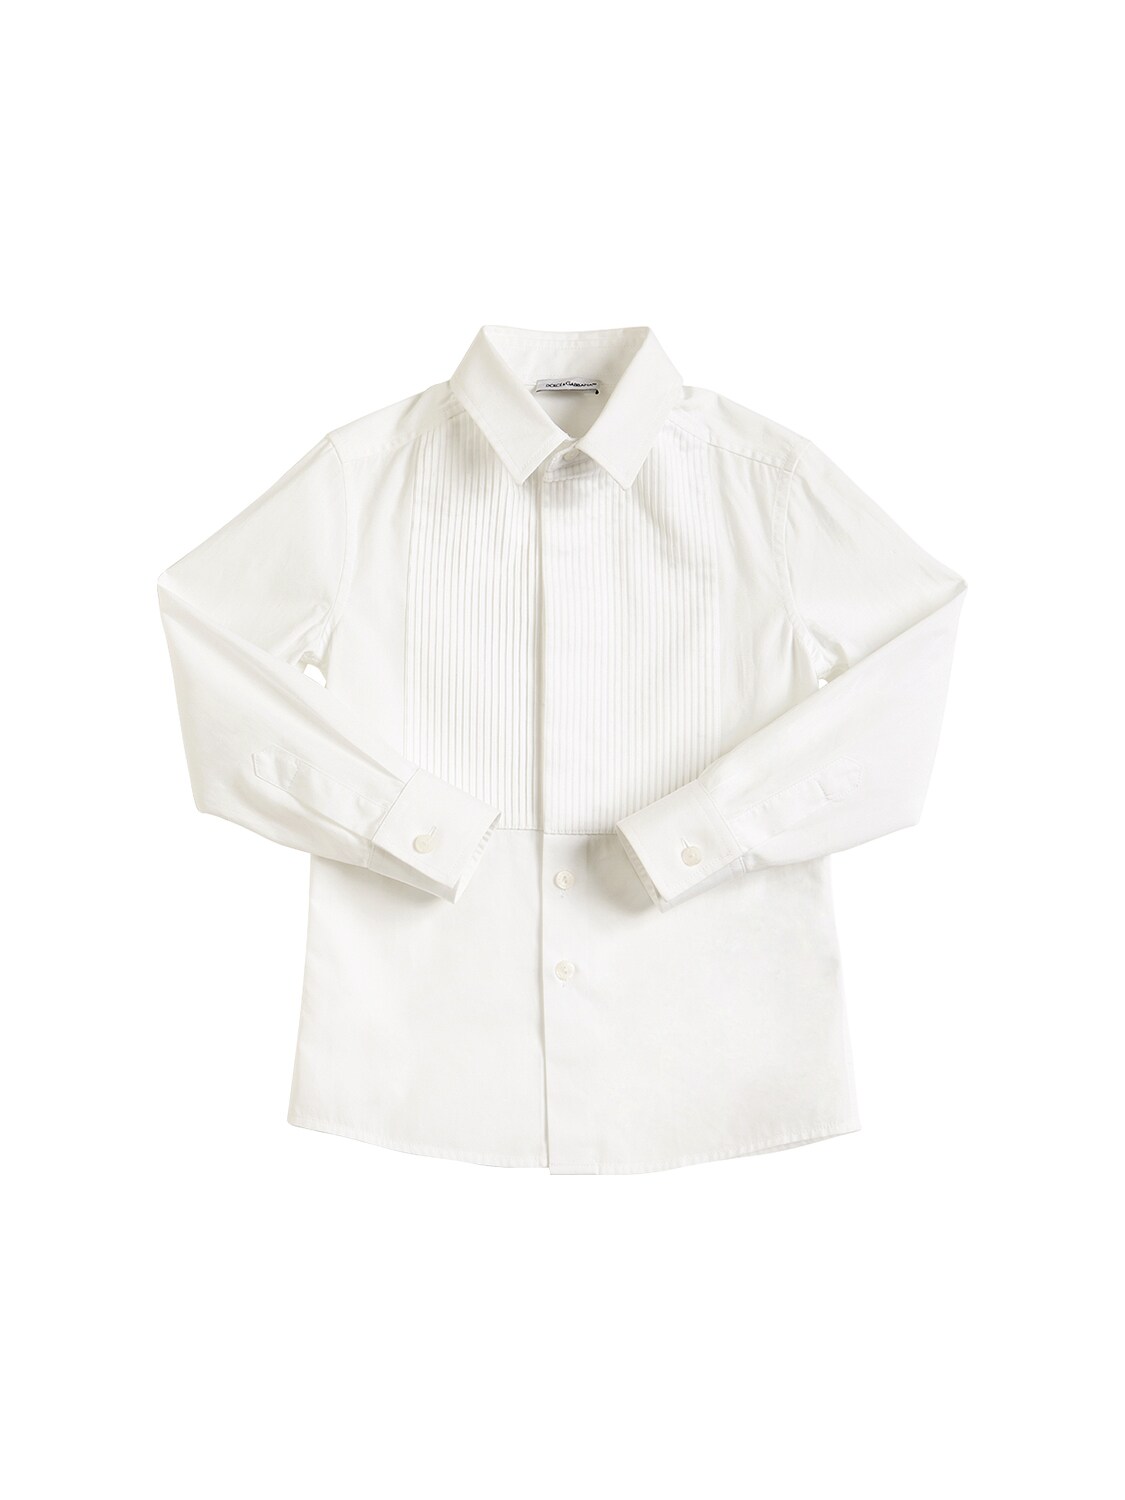 Dolce & Gabbana Kids' Cotton Poplin Shirt In White